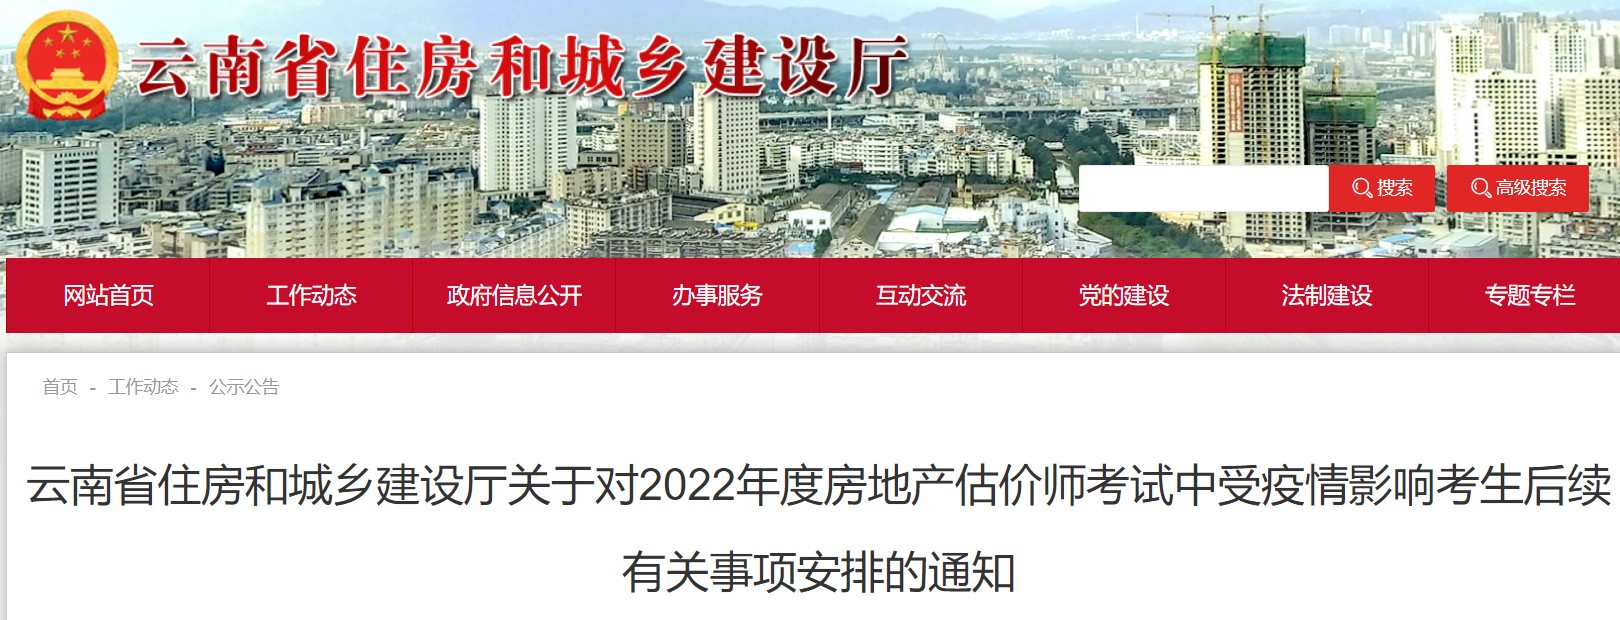 云南关于对2022年房地产估价师考试受疫情影响考生后续事项安排的通知